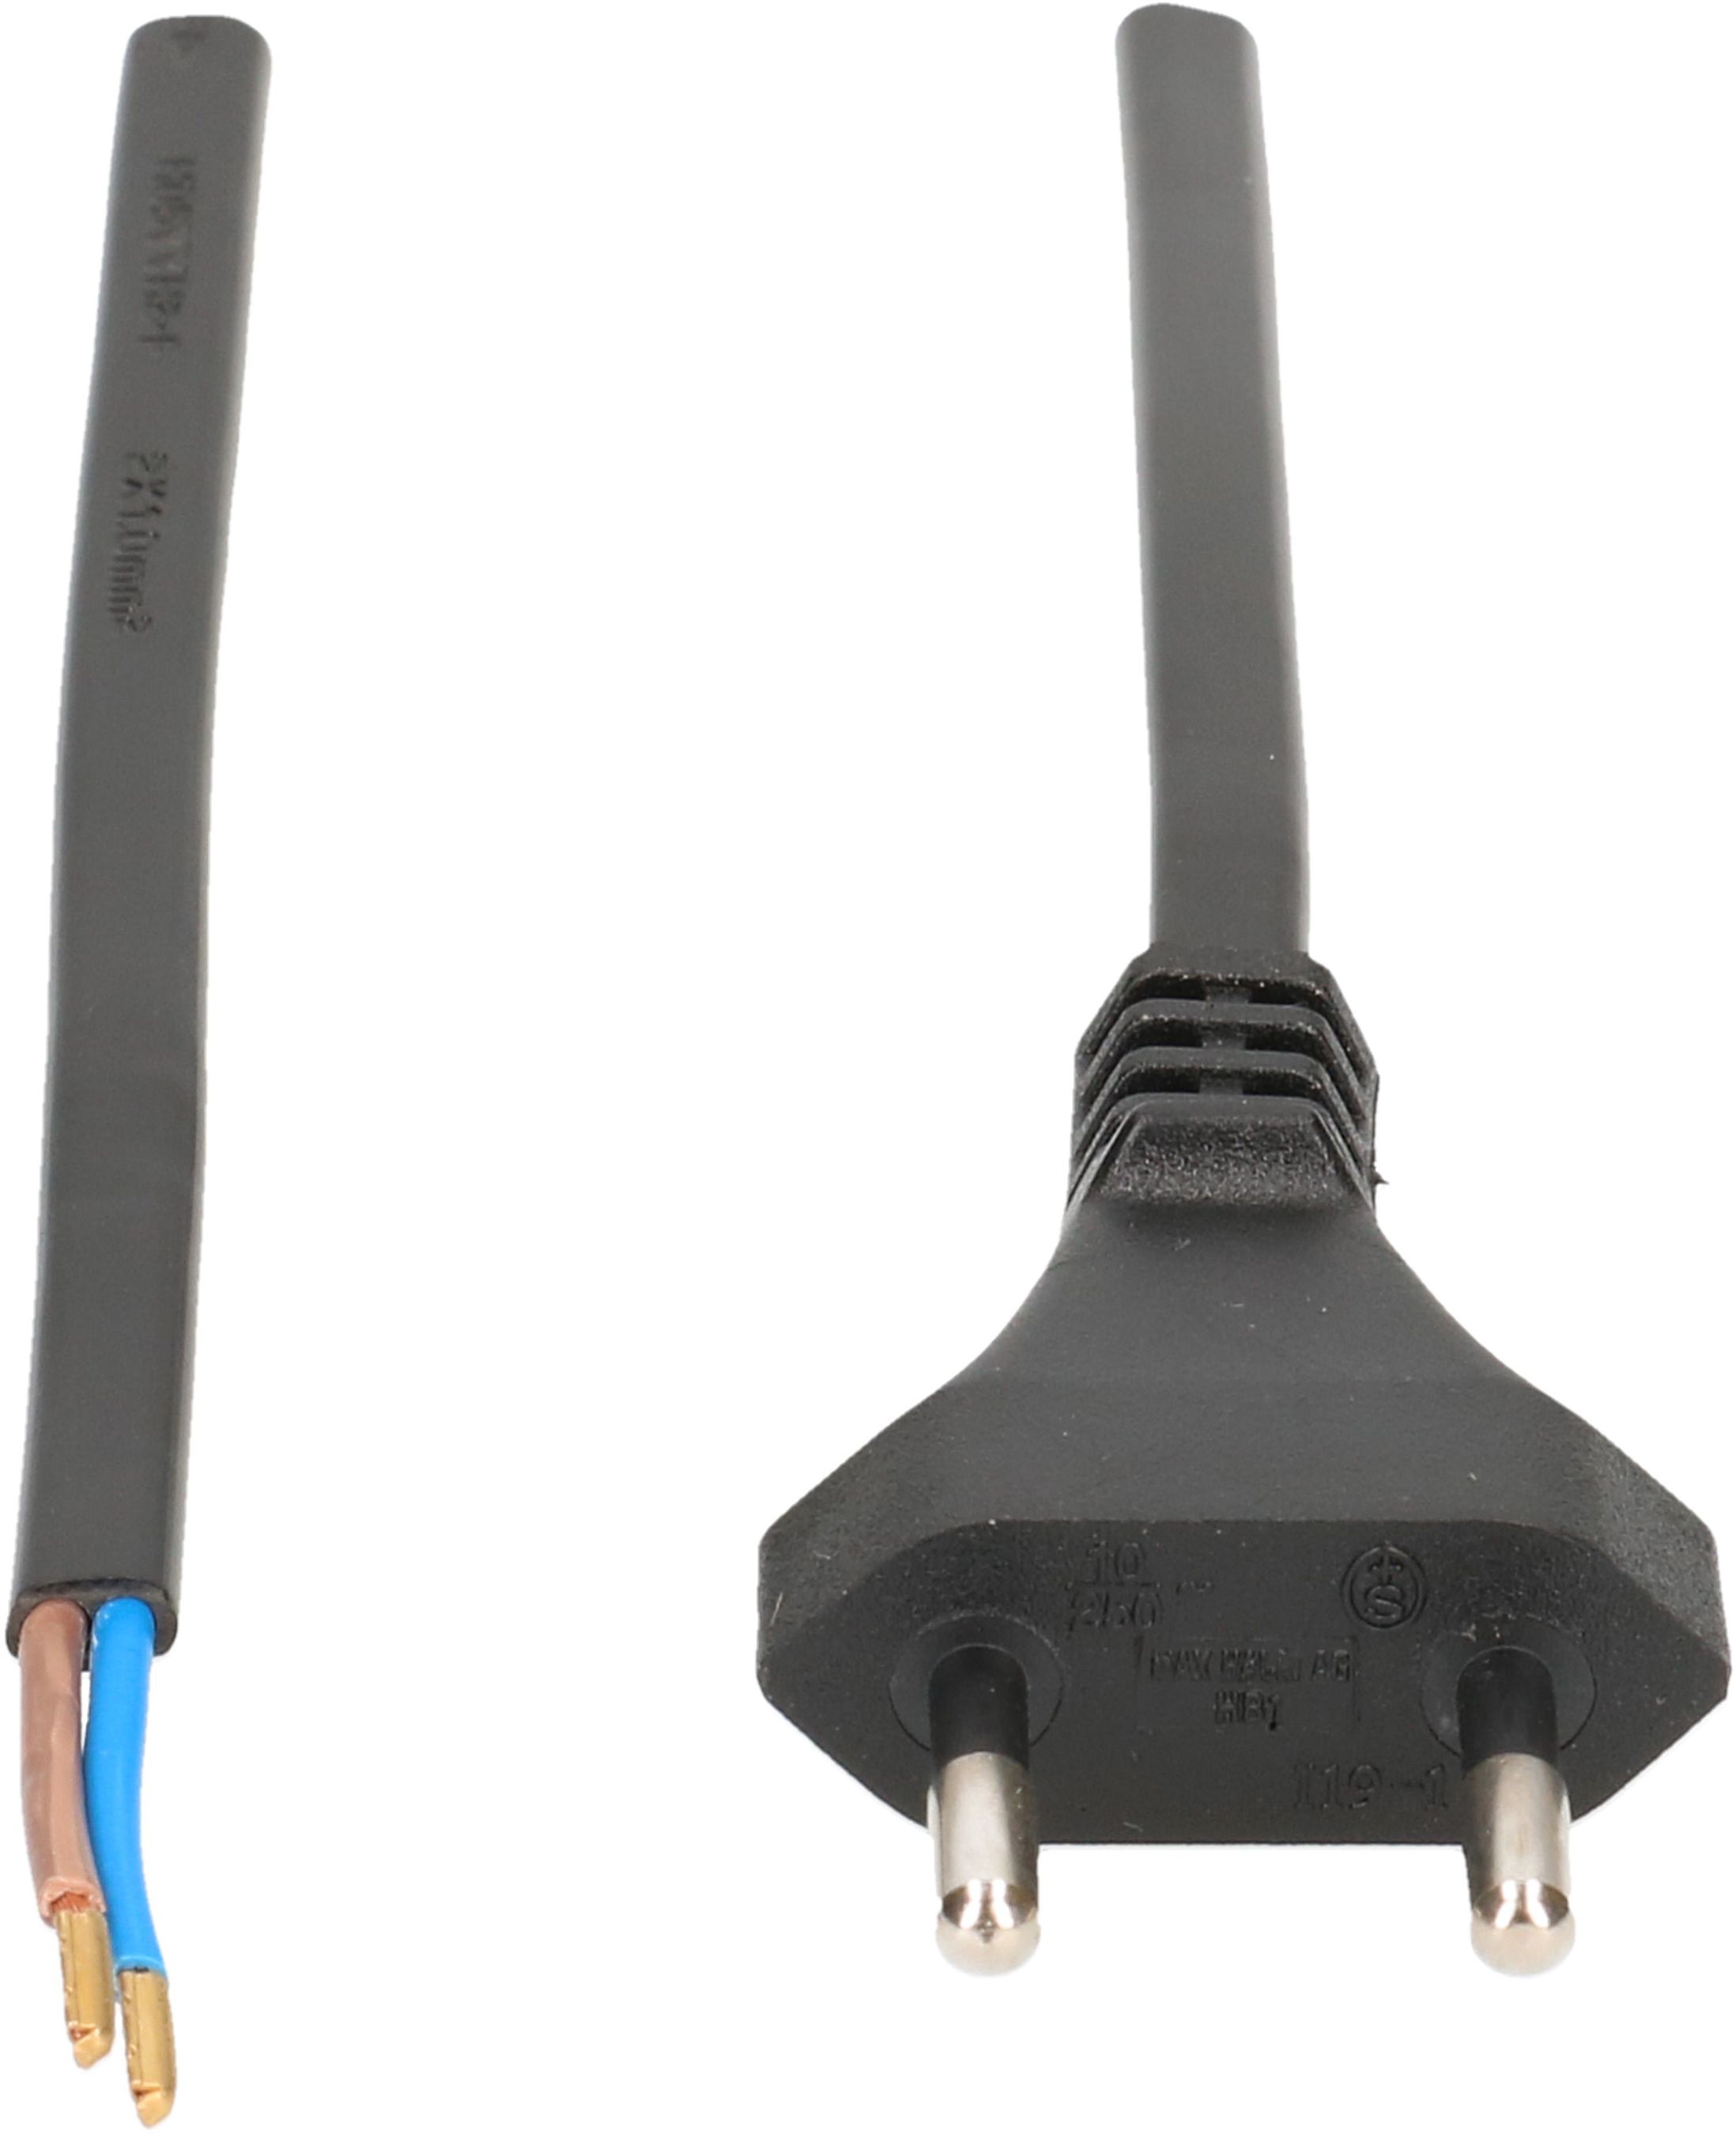 TDF câble secteur H05VVH2-F2X1.0 2m noir type 11